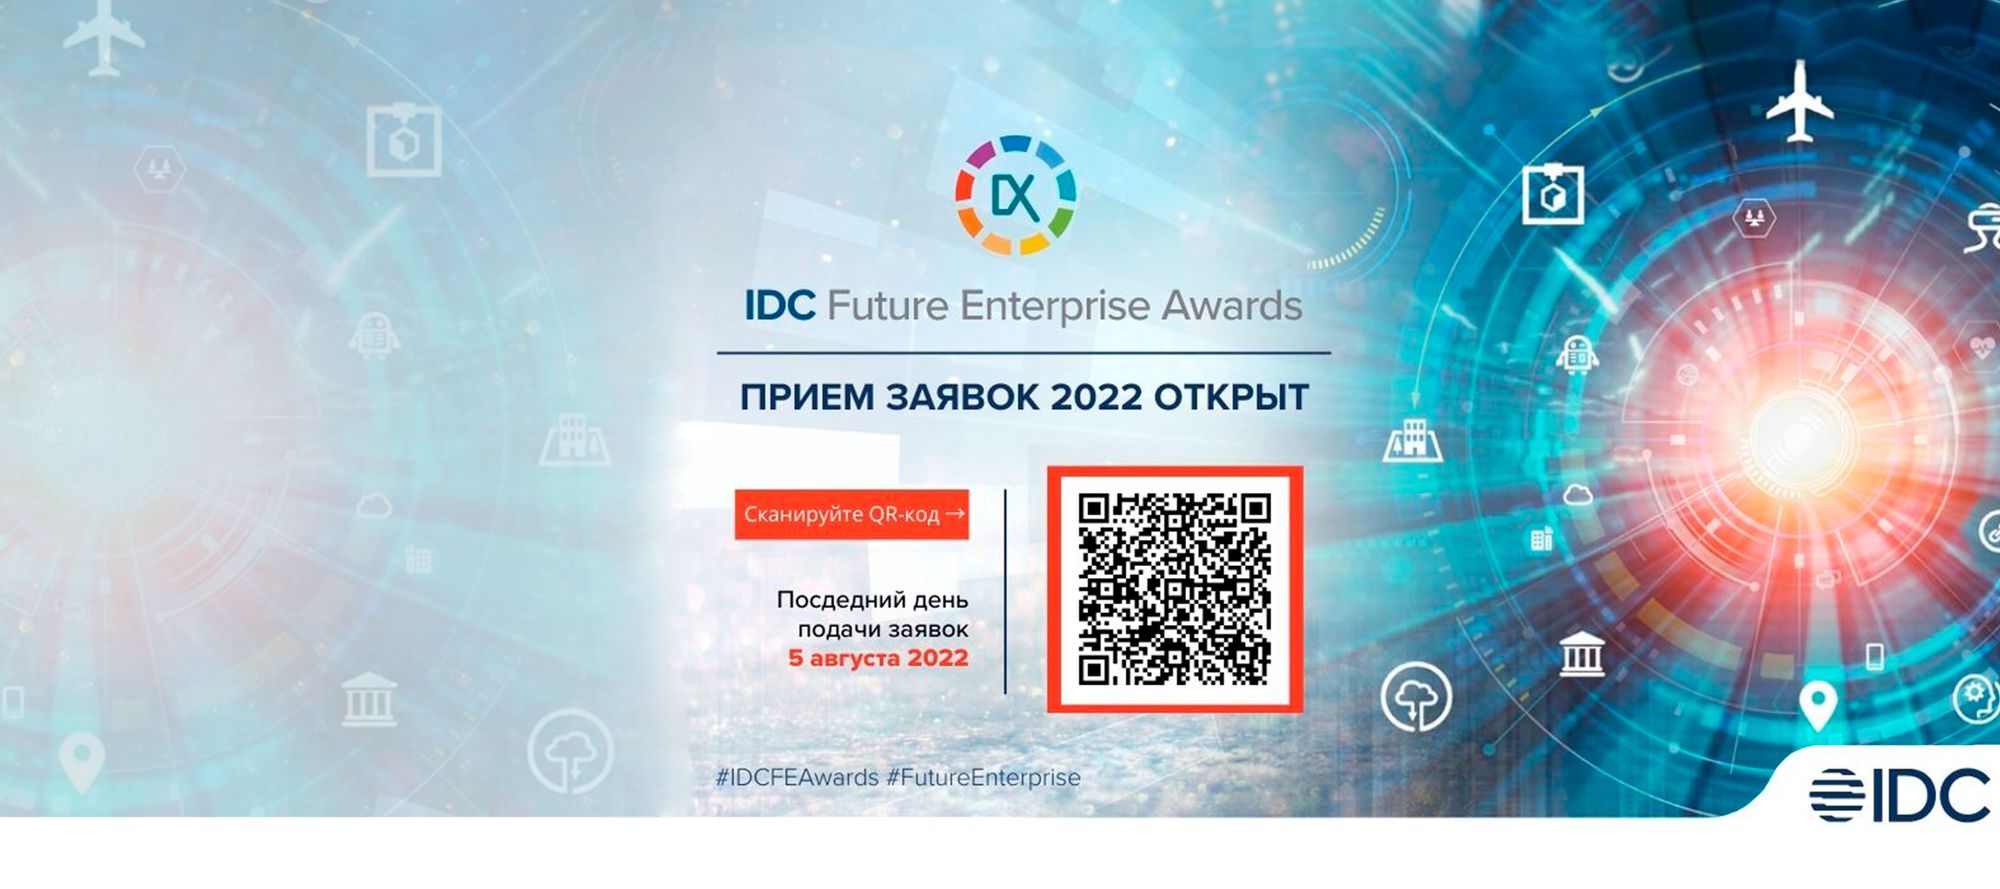 Открыт прием заявок на конкурс IDC Future Enterprise Awards 2022